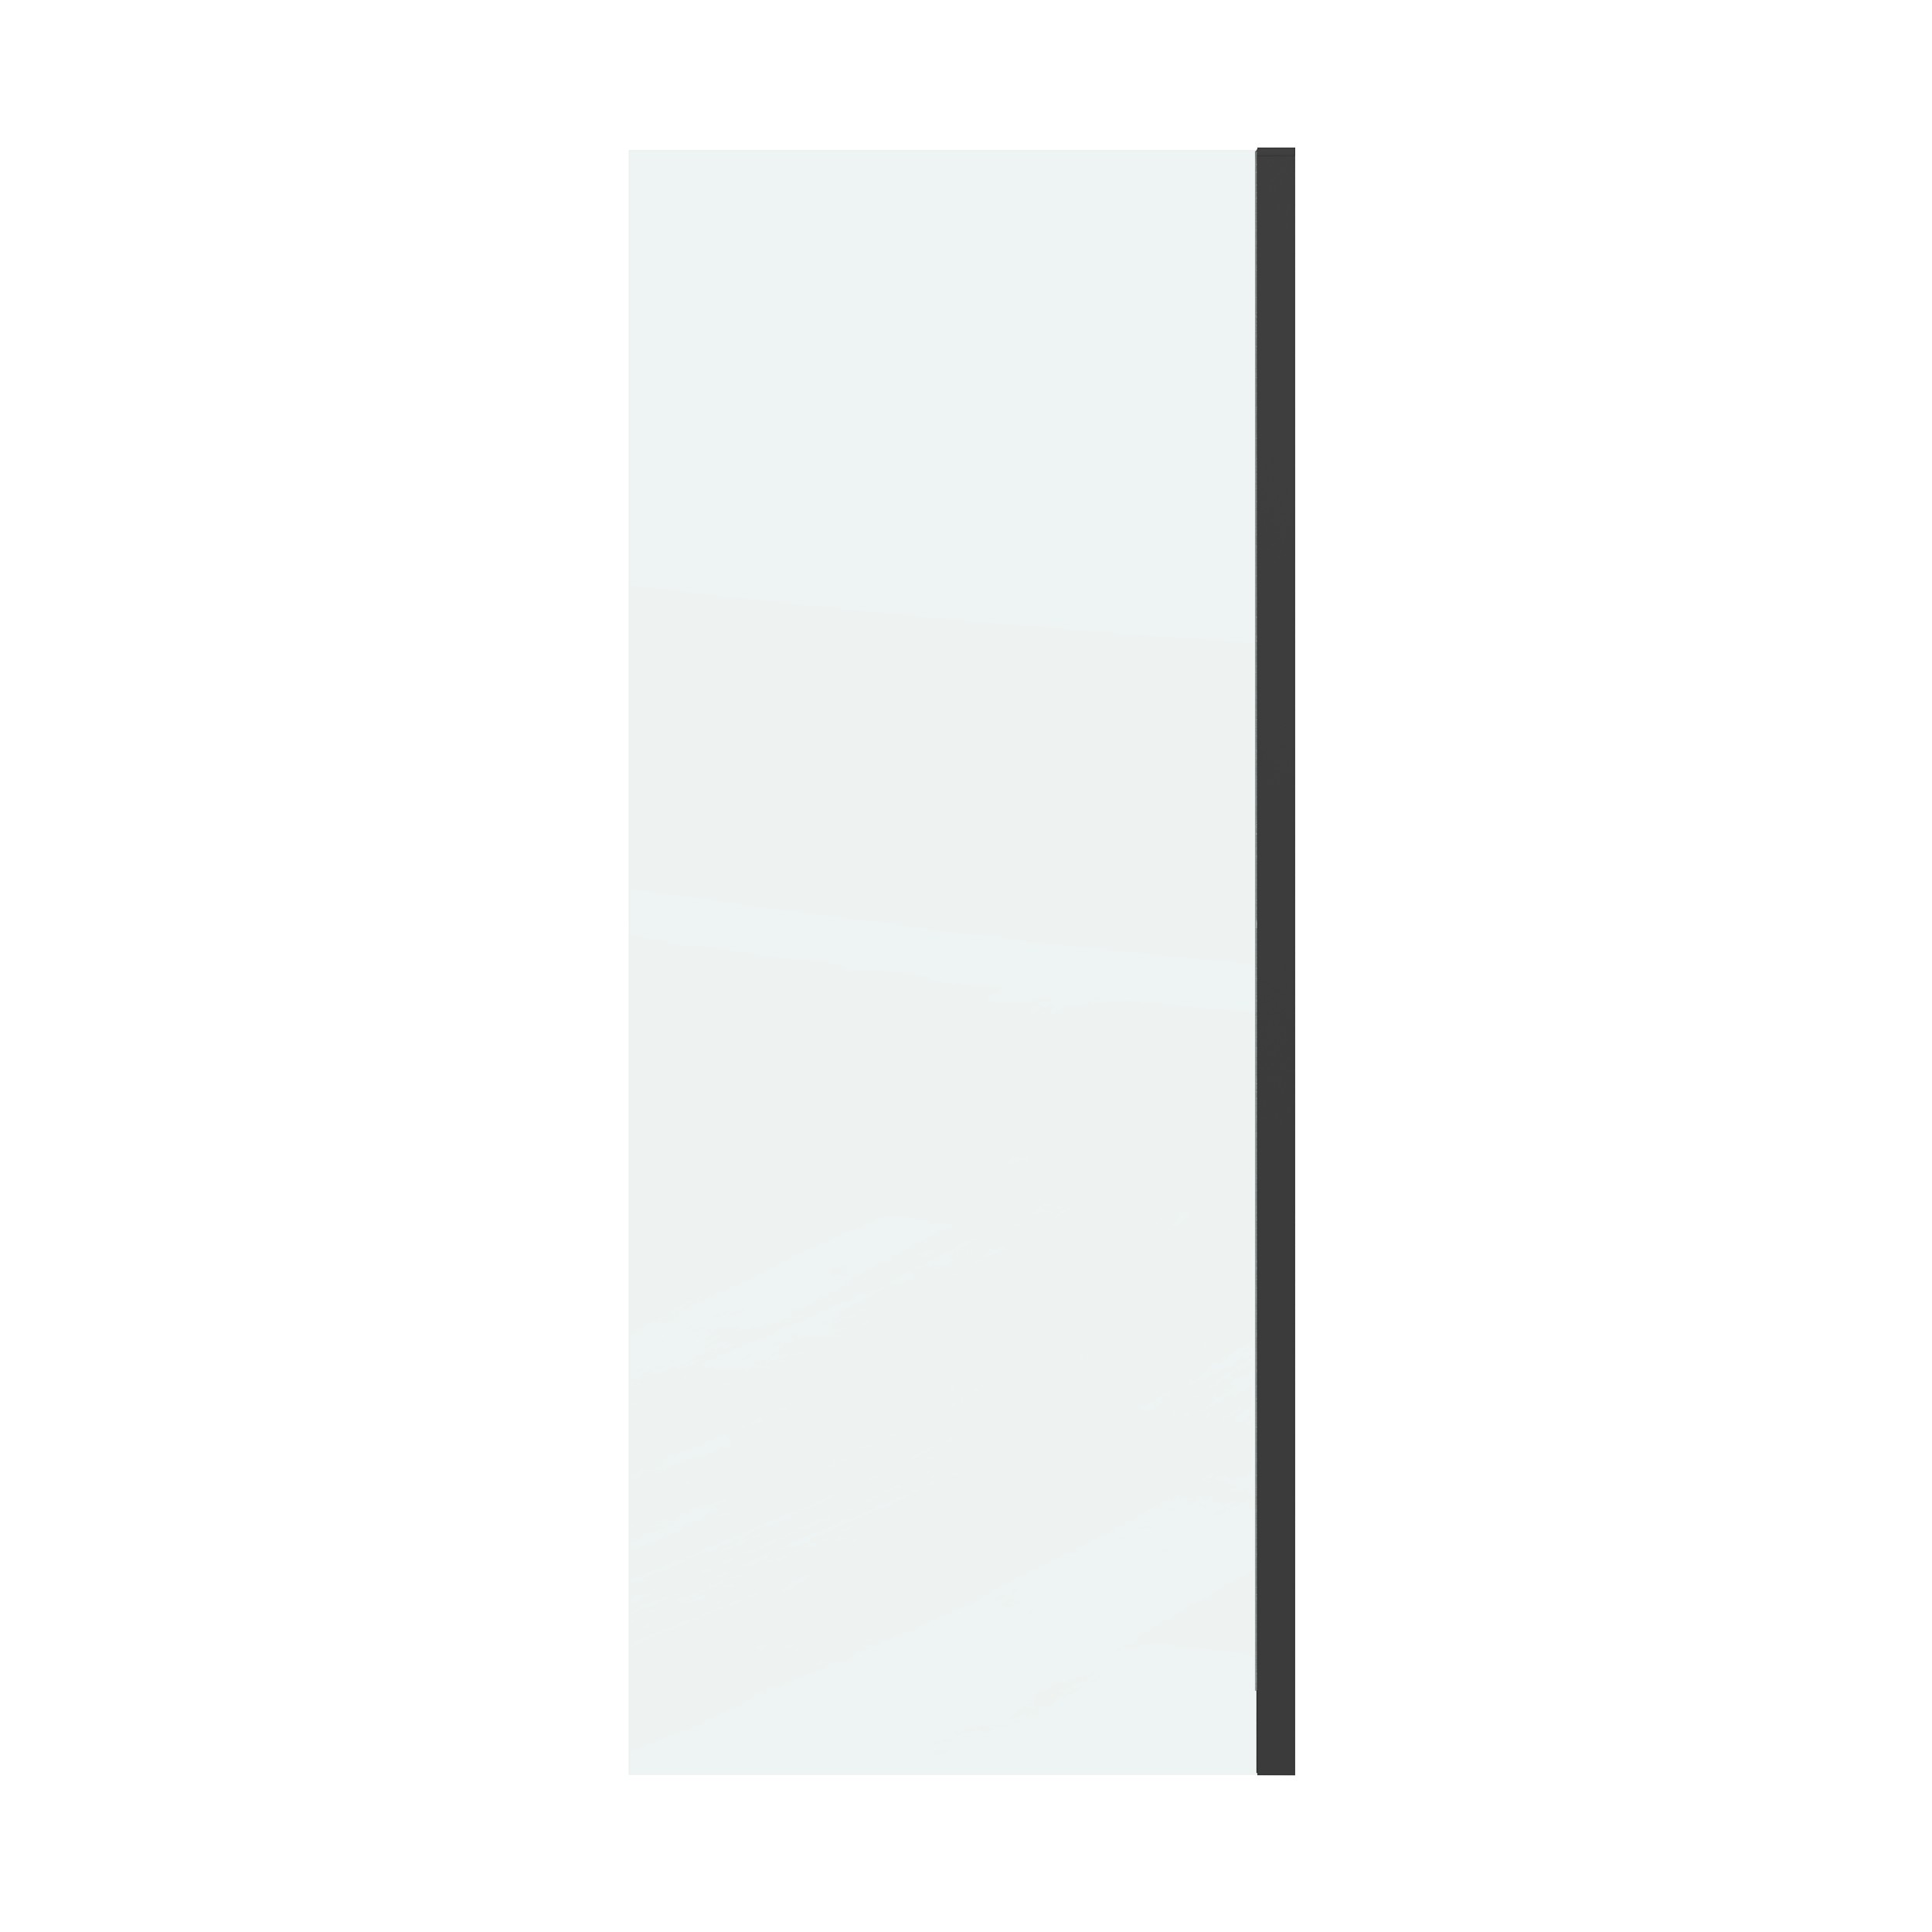 Боковая стенка Grossman Classic 90x195 200.K33.04.90.21.00 стекло прозрачное, профиль черный матовый